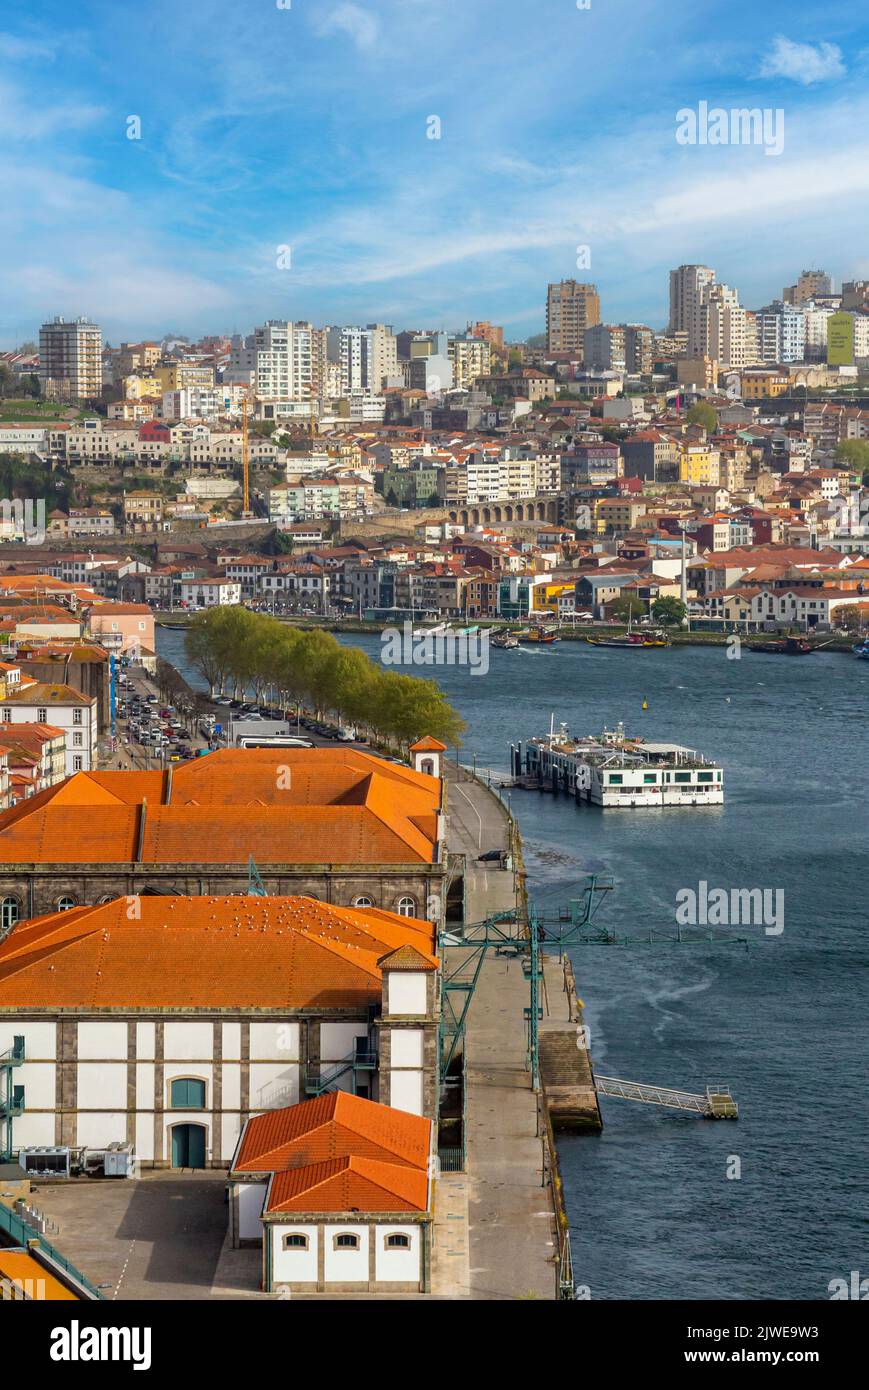 Giro turistico in barca a vela sul fiume Douro nel centro di Porto, una delle principali città del Portogallo settentrionale. Foto Stock